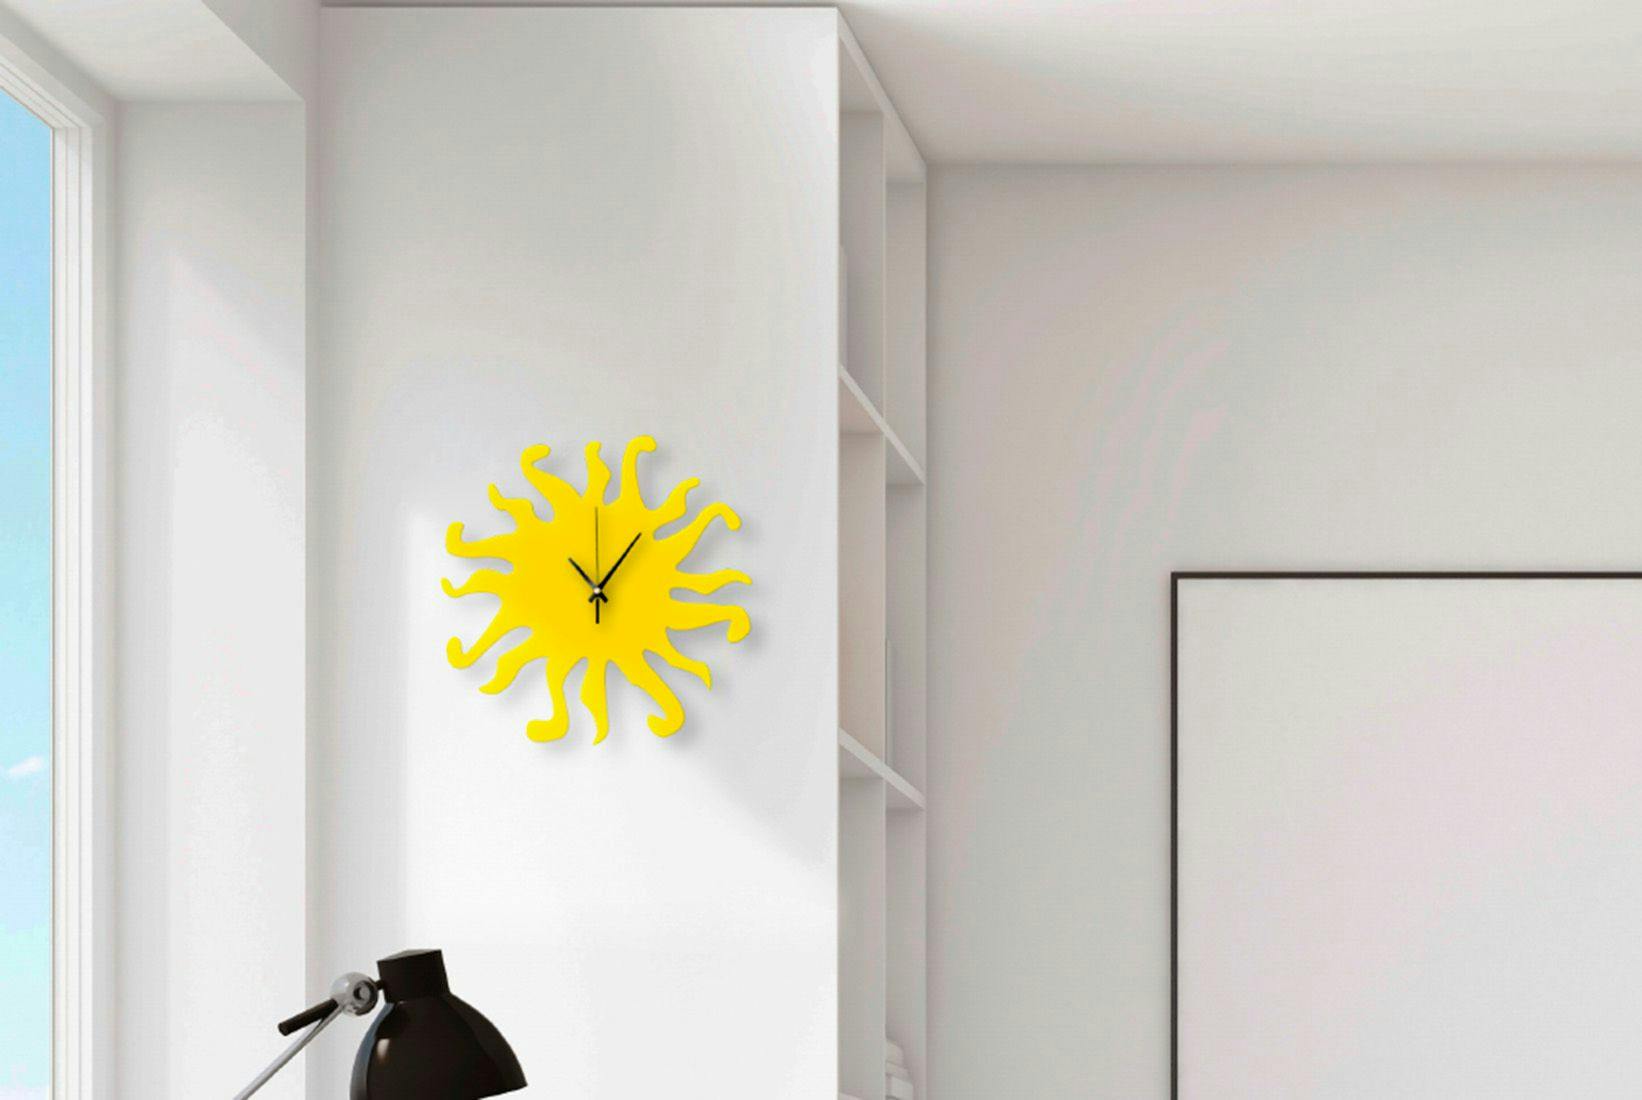 Zegar w kształcie słońca do pokoju dziecięcego.